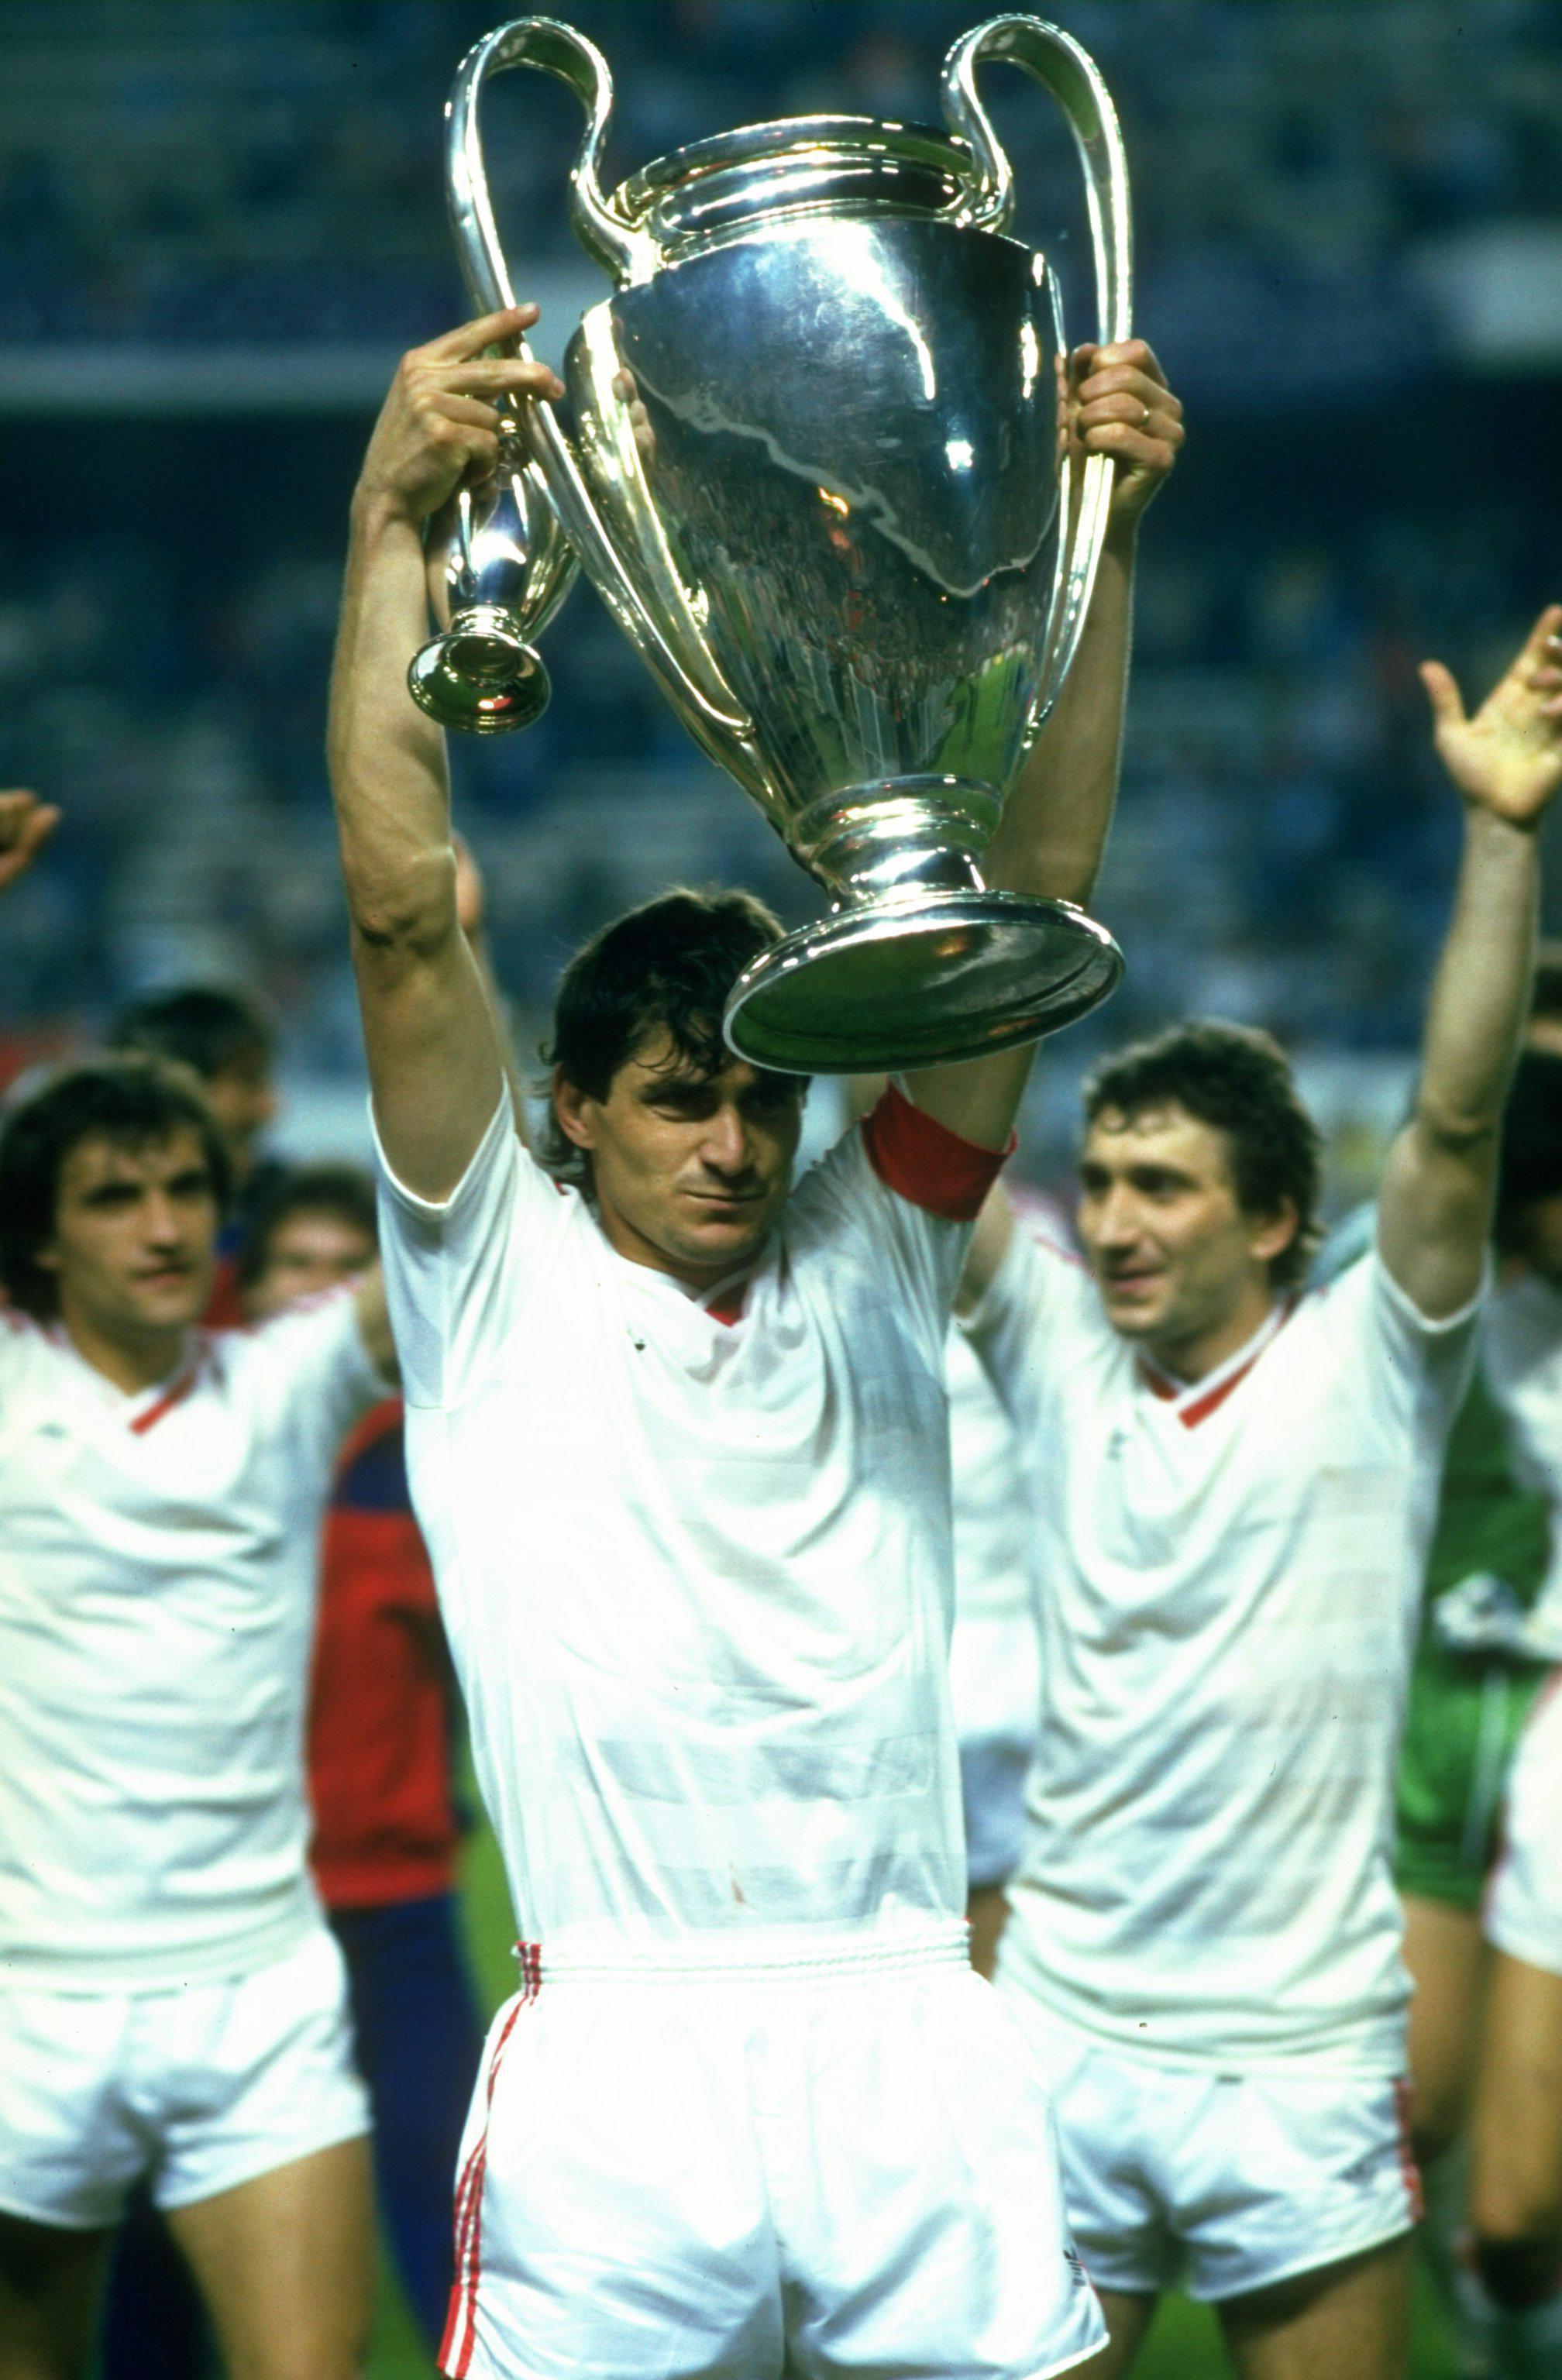 Romania football European Champions Cup 1986 Steaua Bucuresti & Kuusysi  Lahti #2